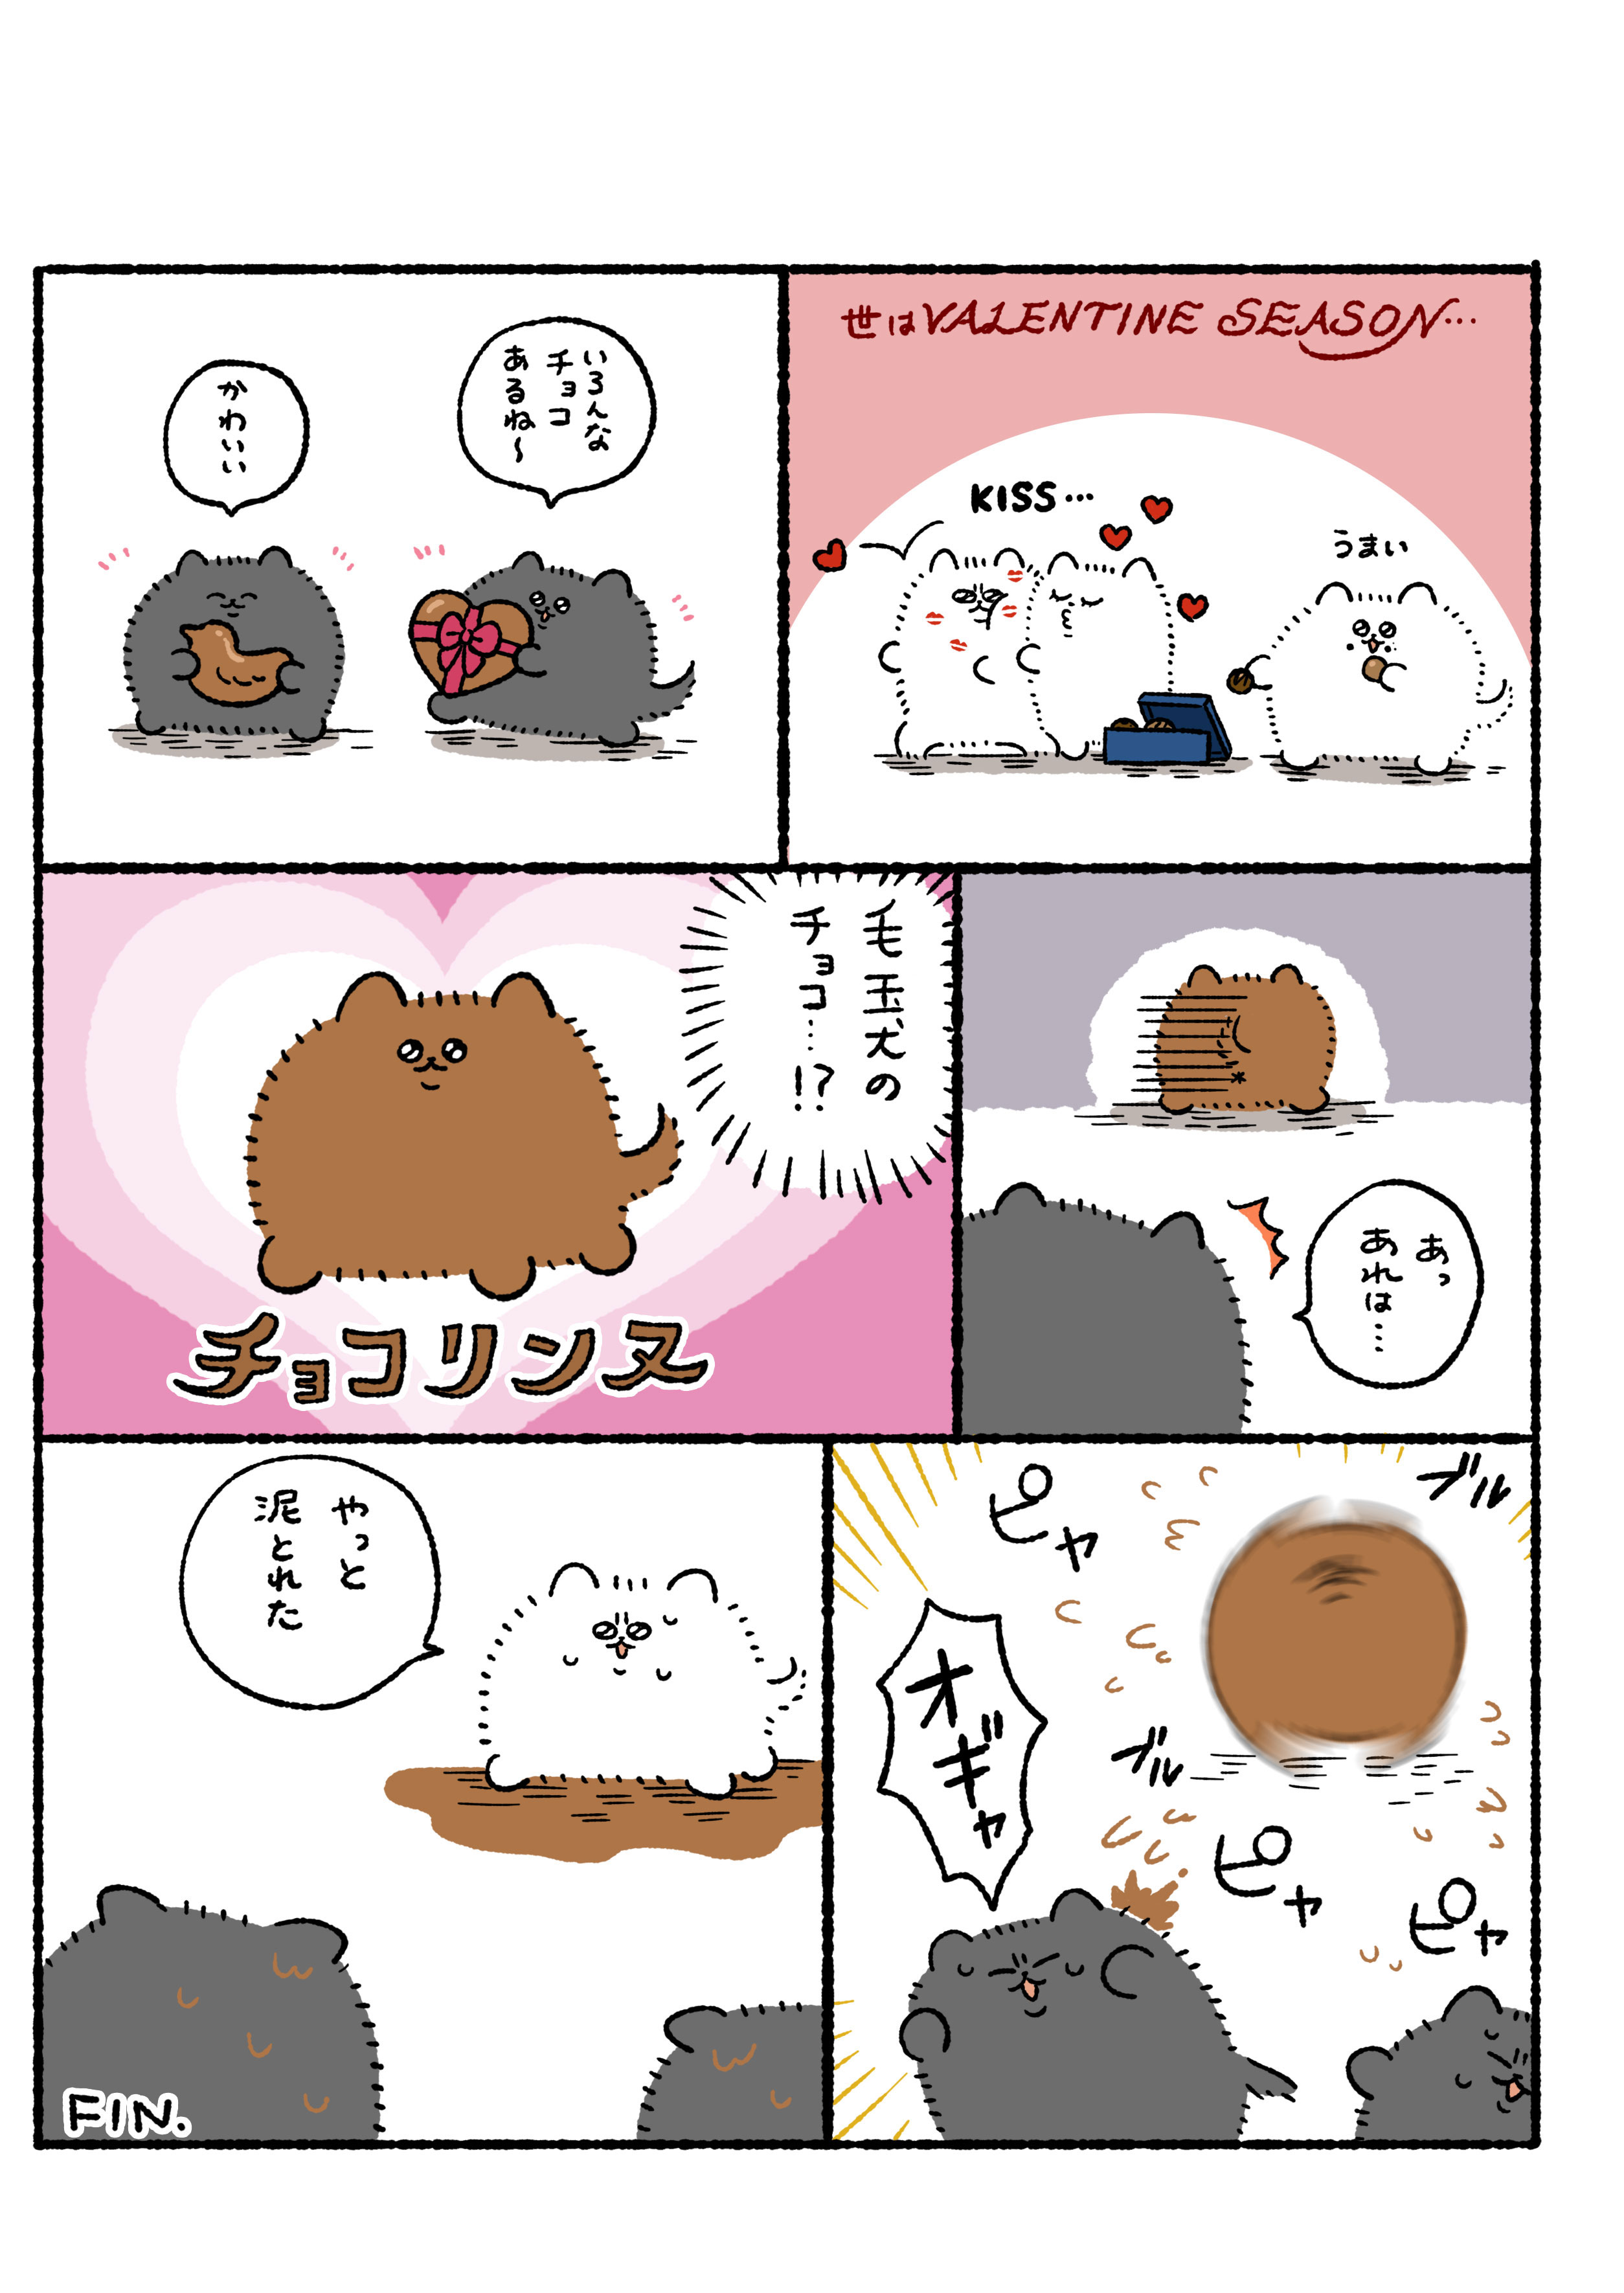 毛玉犬 バレンタインデー 無料で読める漫画 ４コマサイト パチクリ